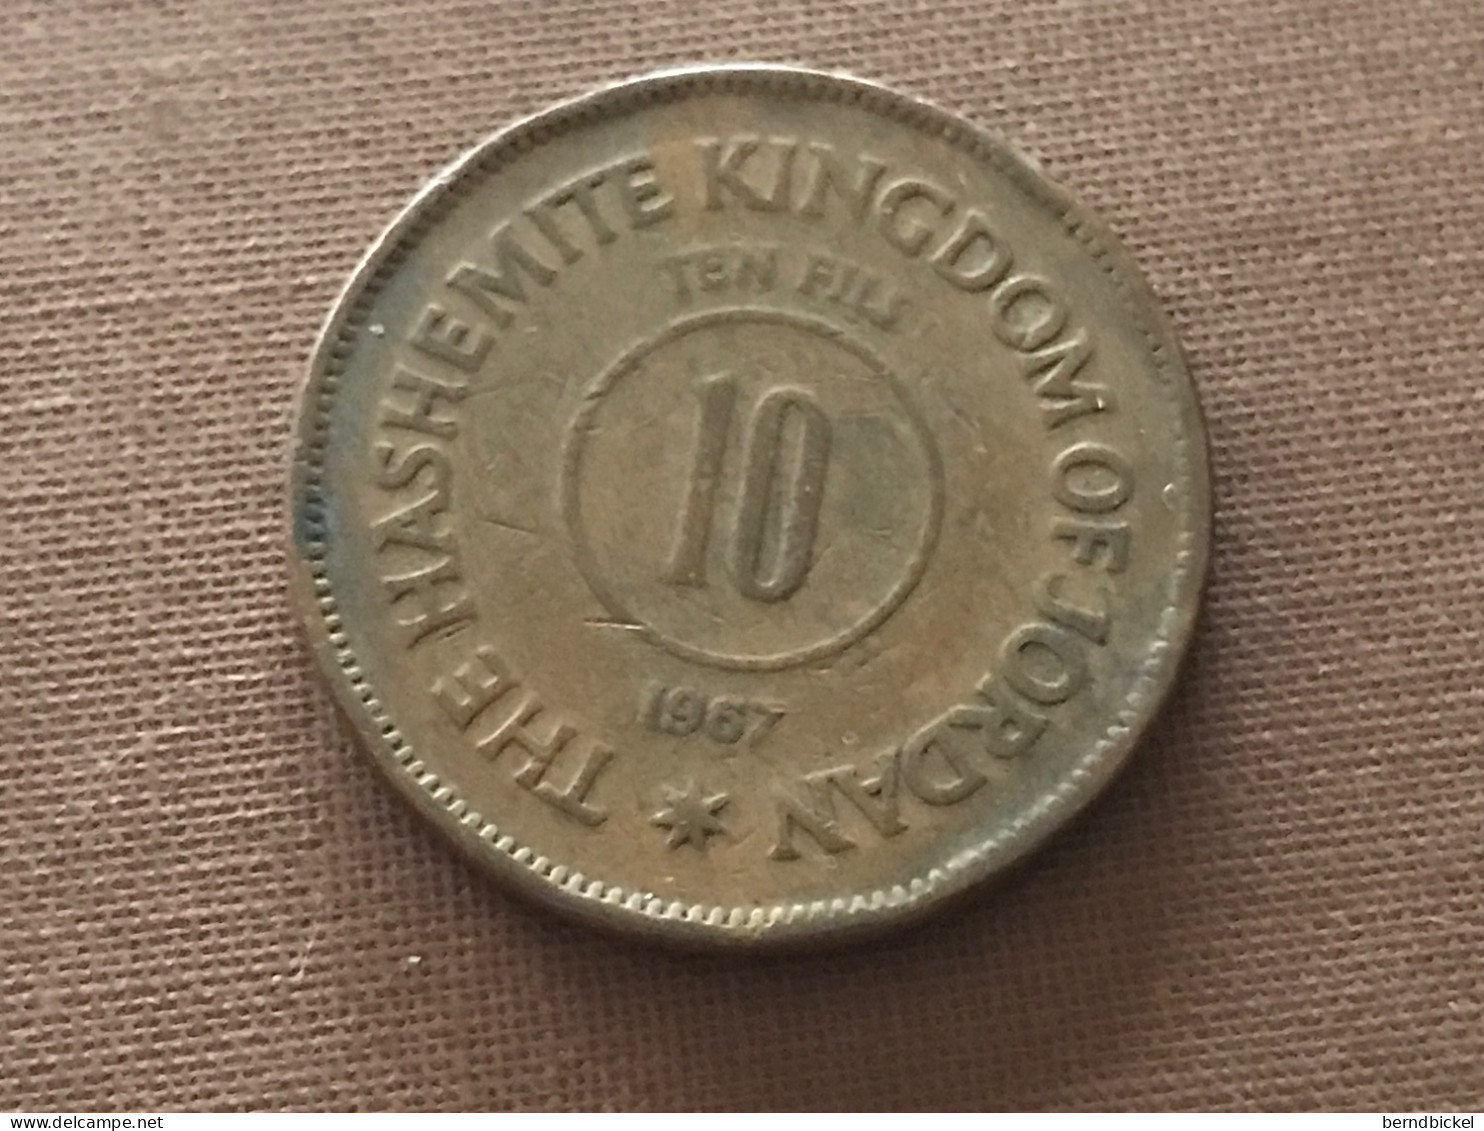 Münze Münzen Umlaufmünze Jordanien 10 Fils 1967 - Jordan